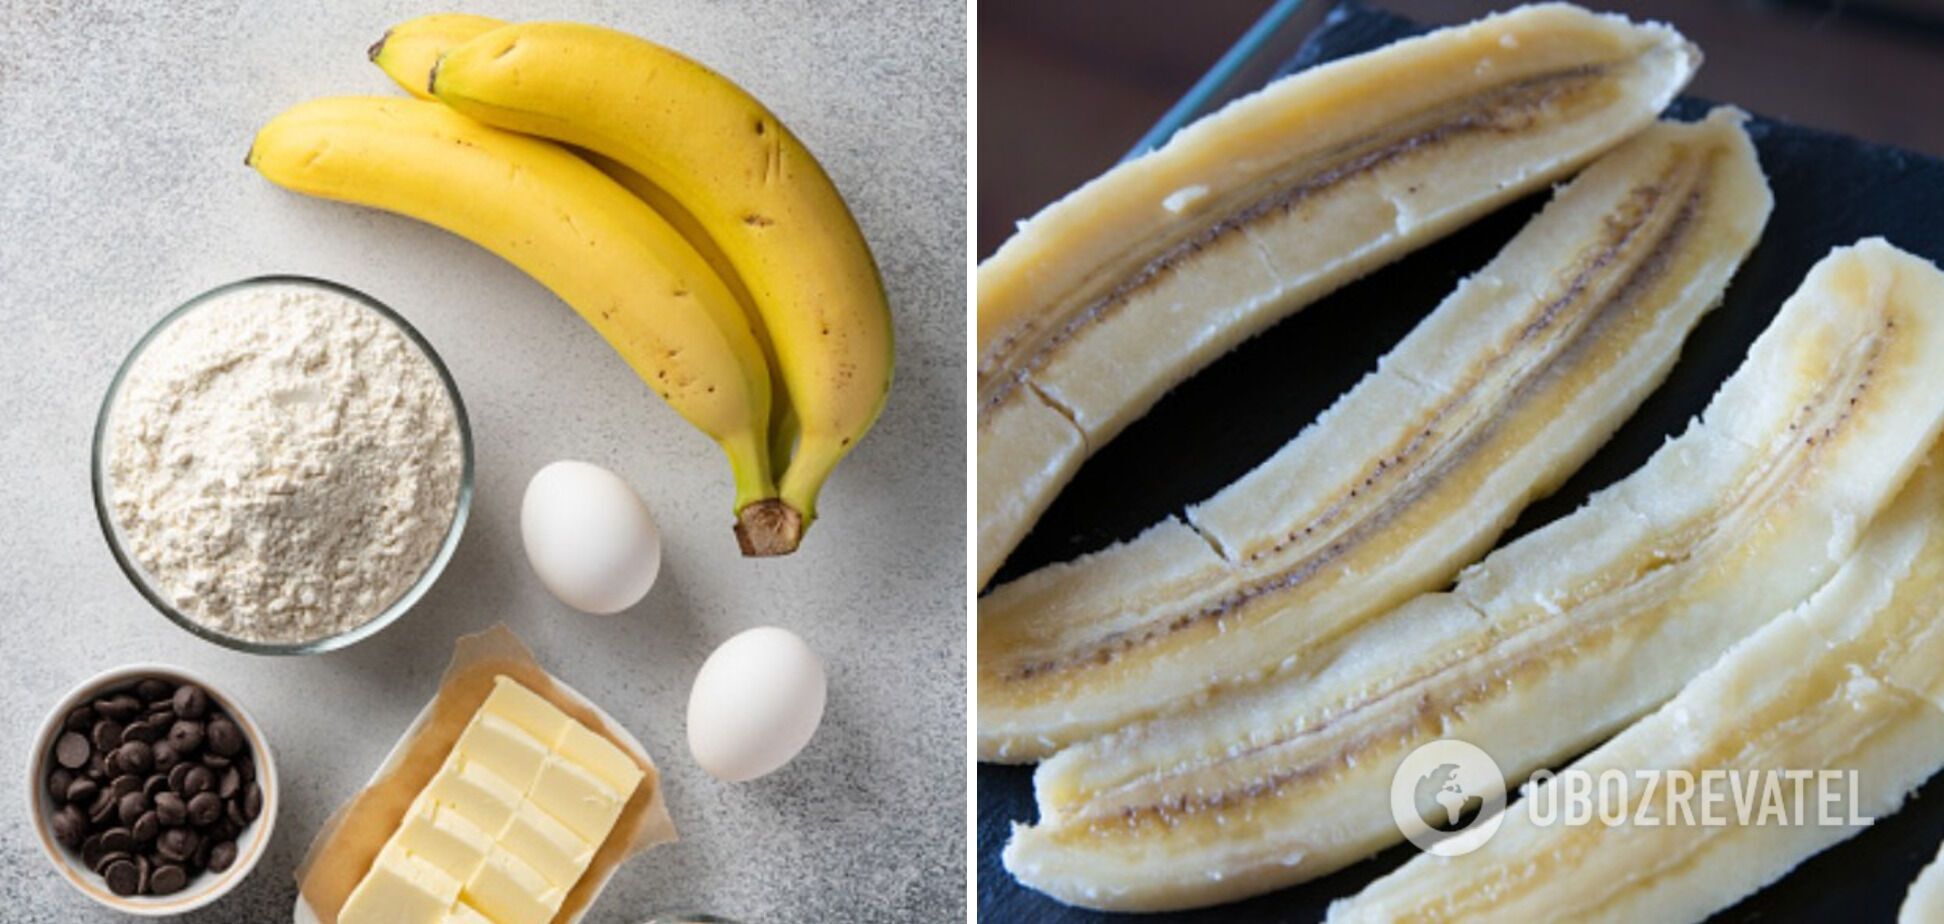 Ingredients for banana cake